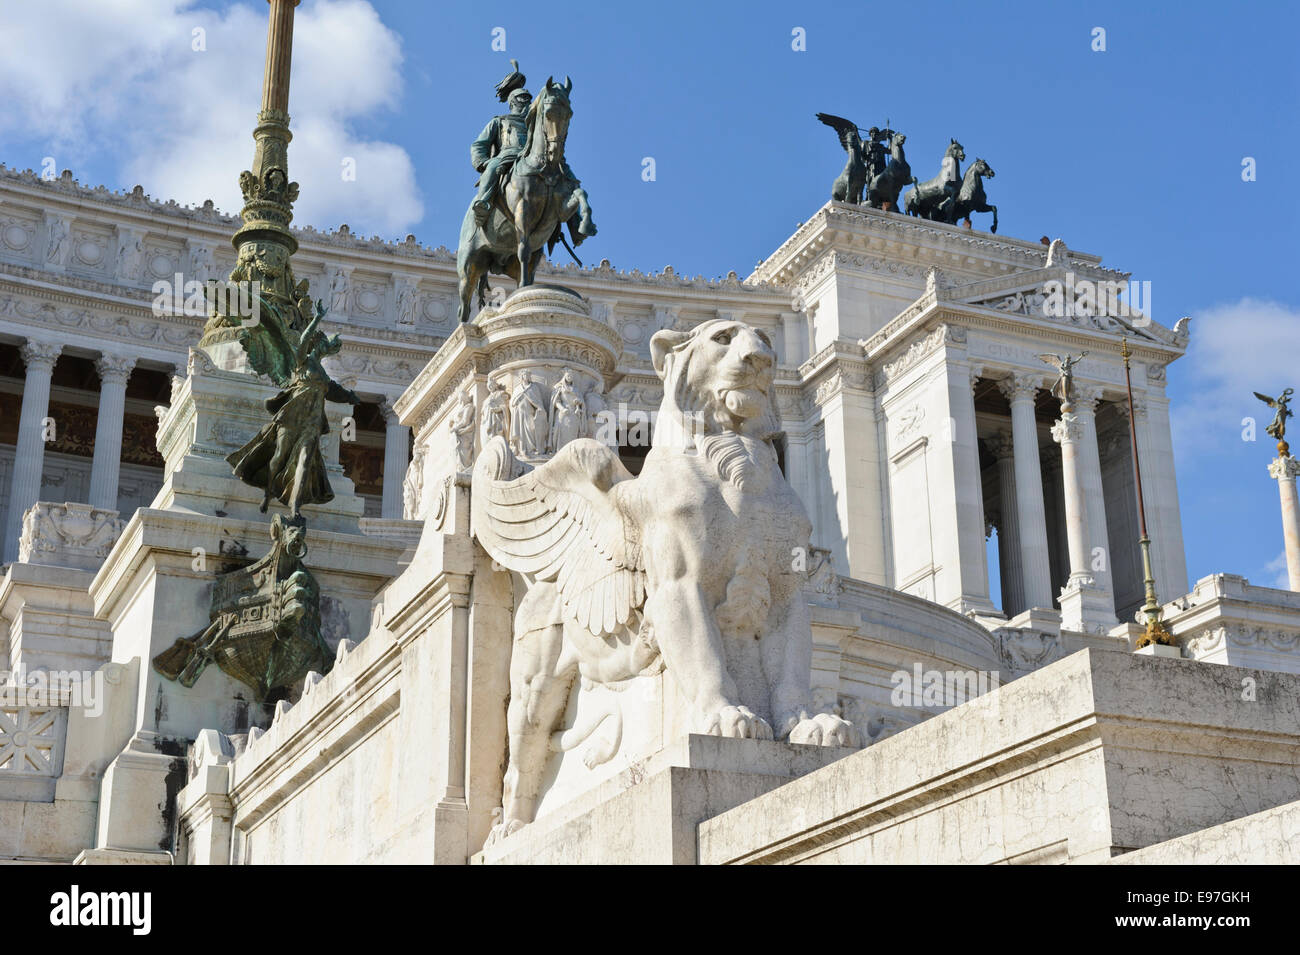 Un bianco leone alato scultura sui gradini della Vittorio Emanuele II monumento nella città di Roma, Italia. Foto Stock